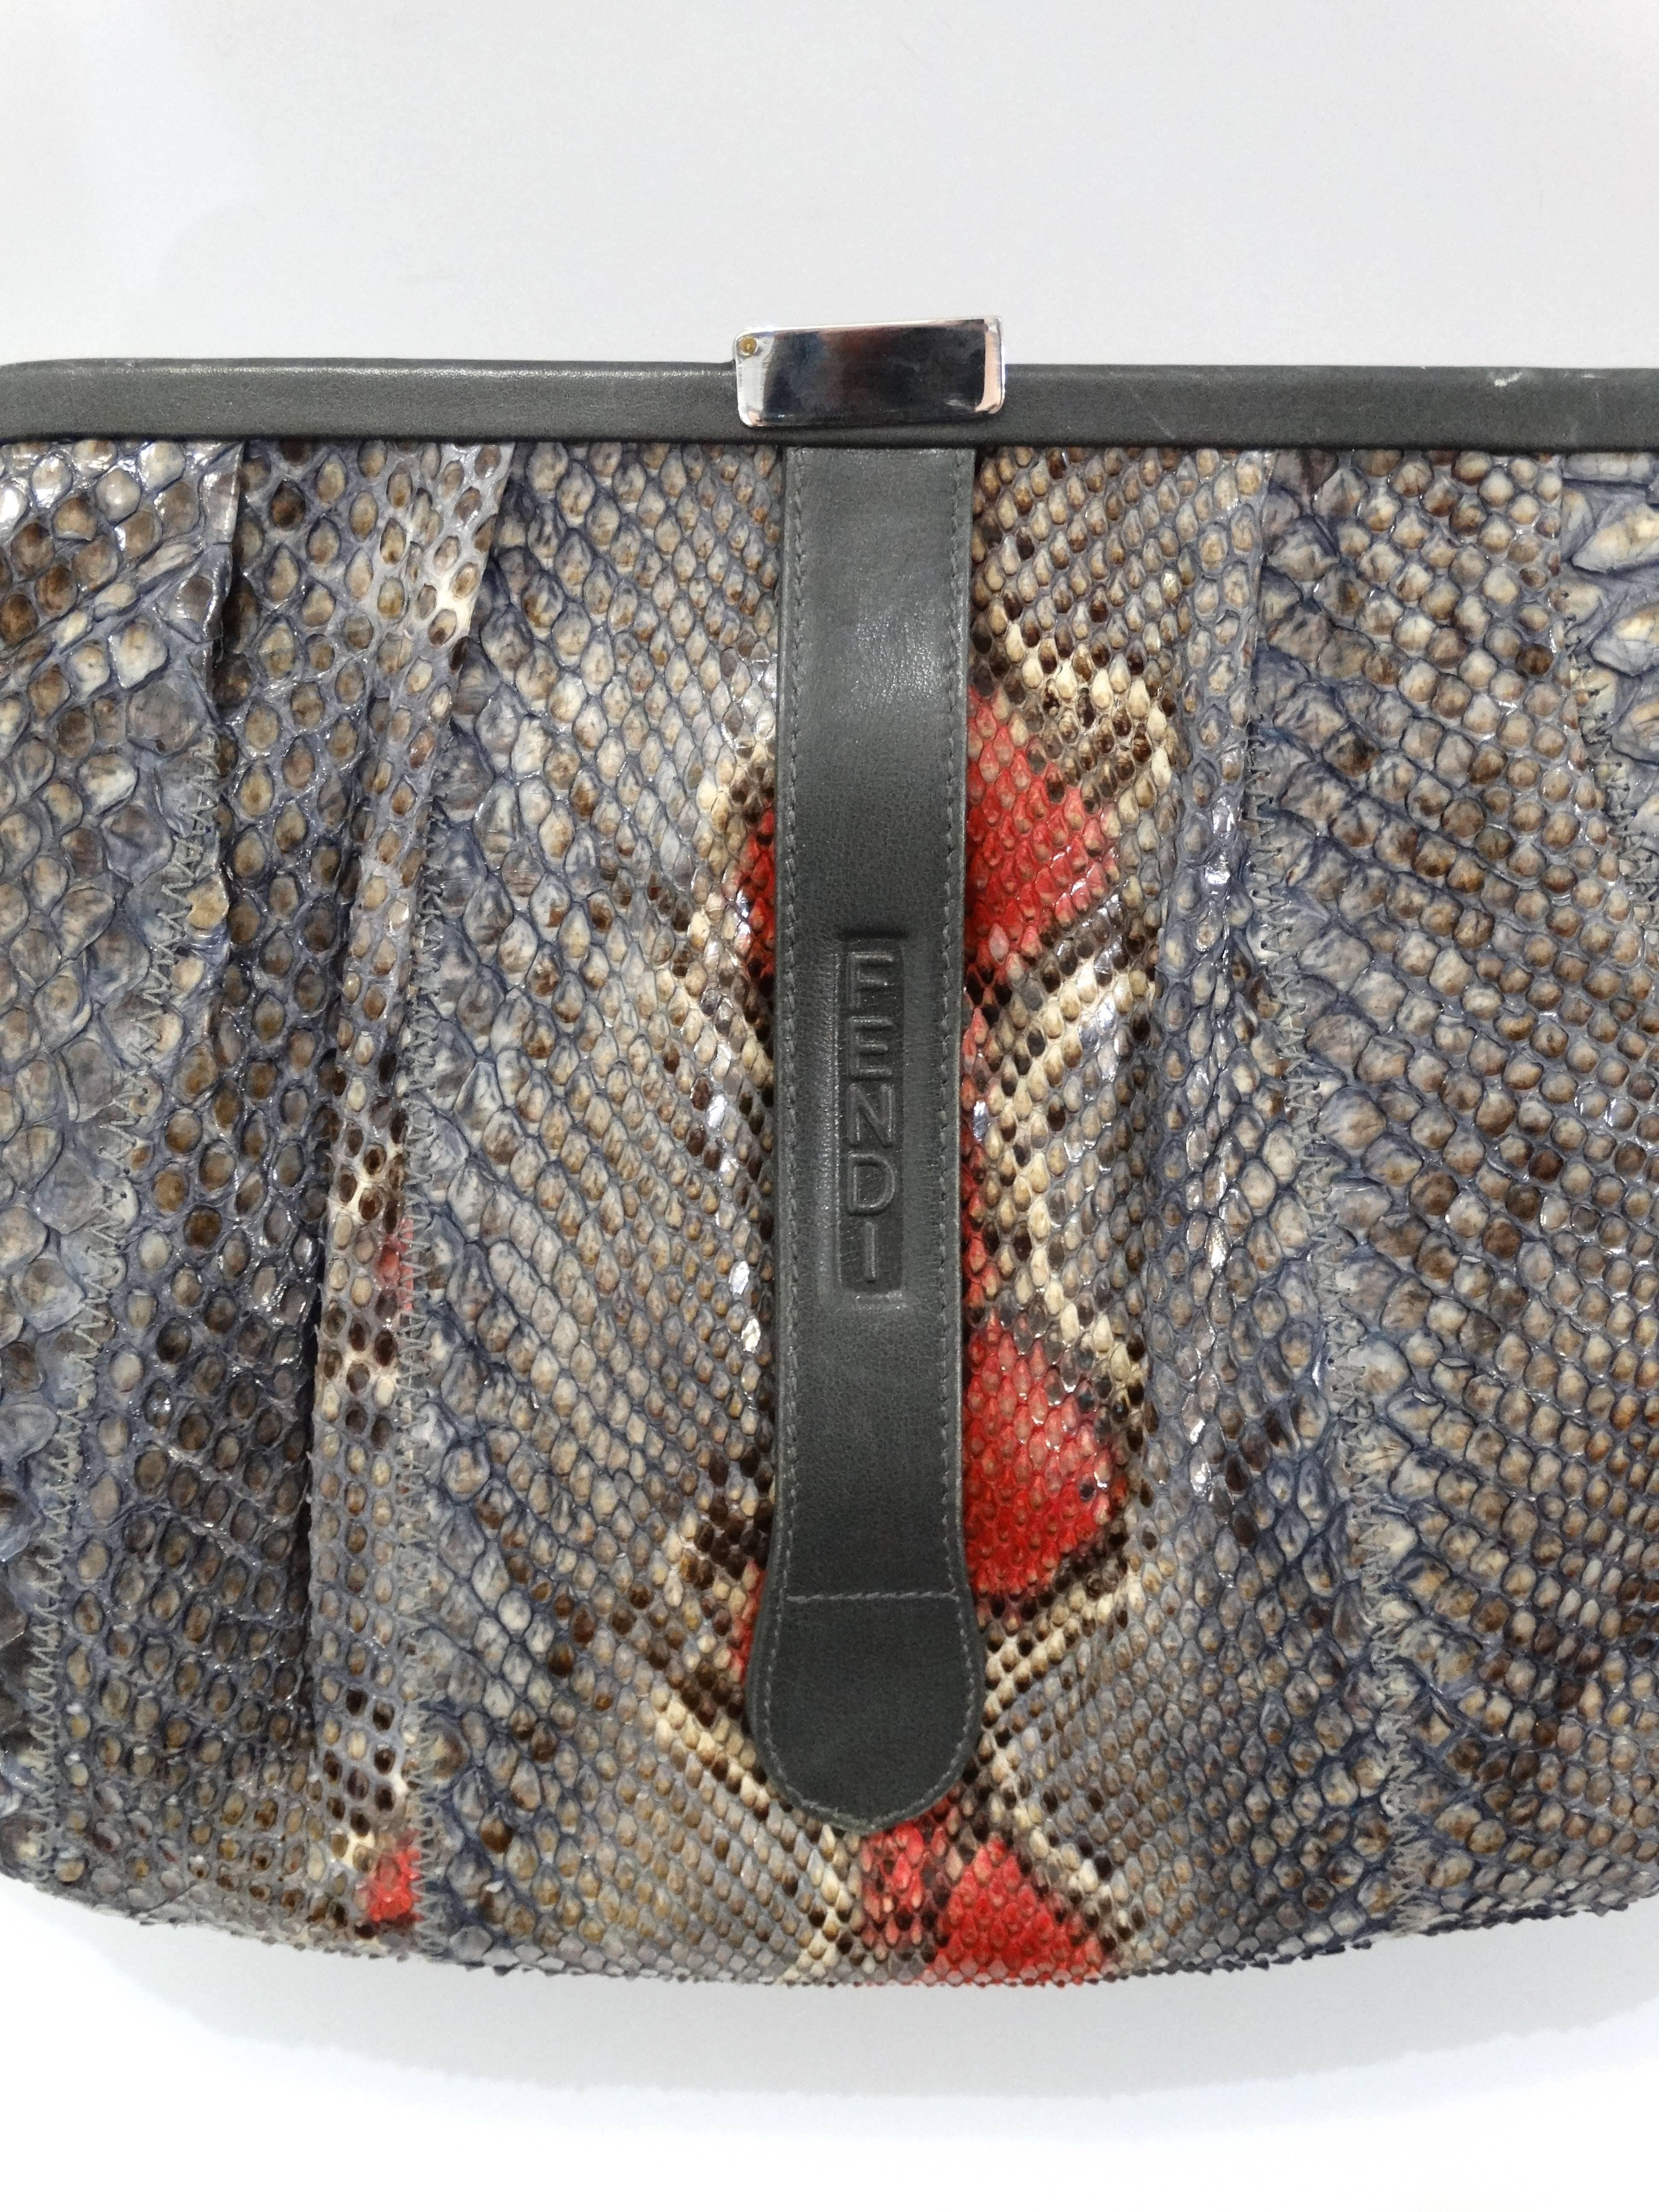 Rare 1980s Fendi Snakeskin Crossbody Bag In Good Condition For Sale In Scottsdale, AZ